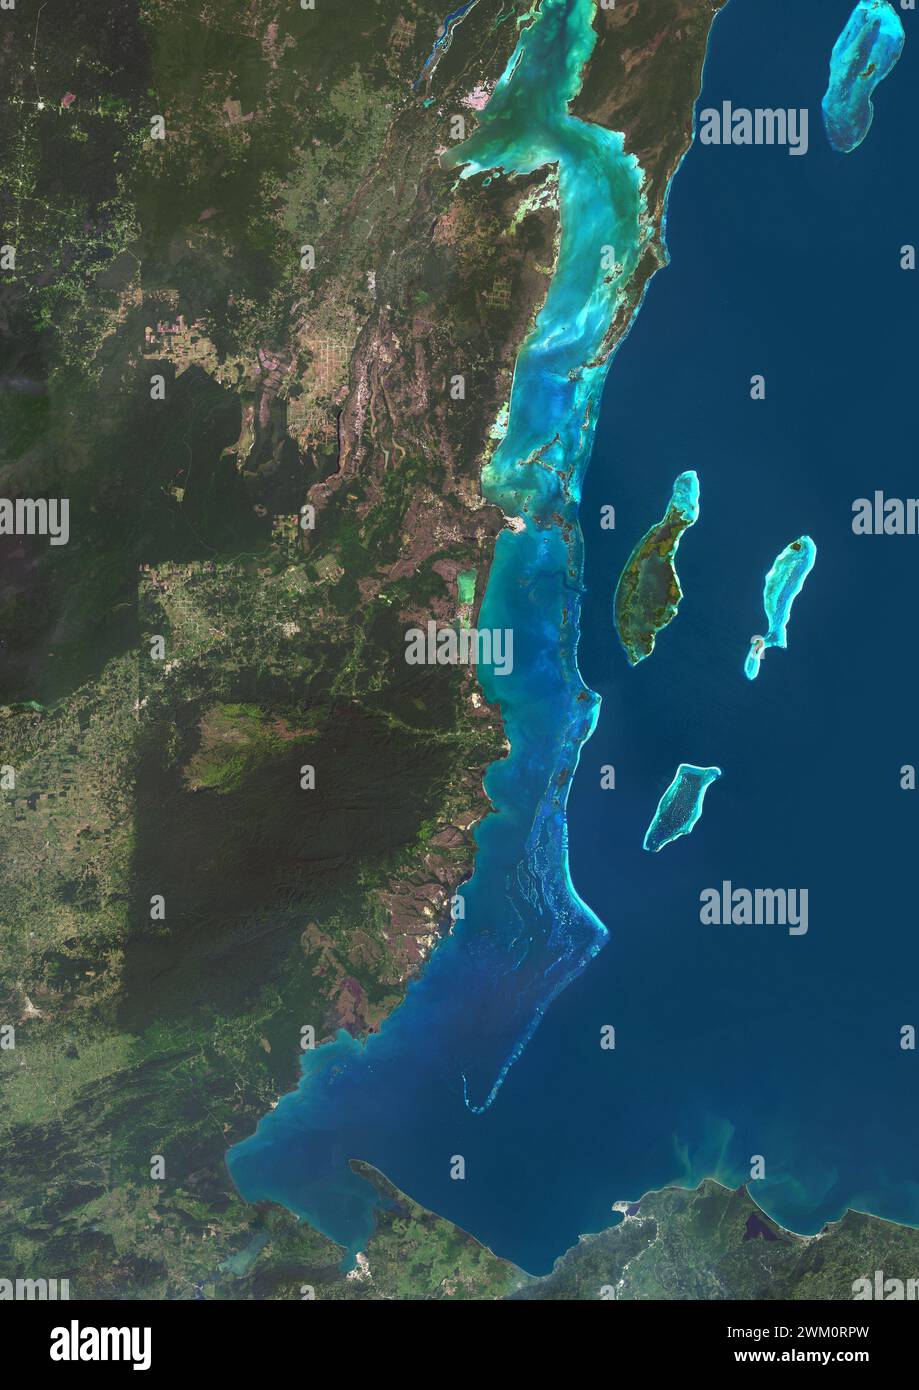 Immagine satellitare a colori del Belize e dei paesi vicini. La Barriera Corallina del Belize corre per circa 190 miglia (300 km) lungo la costa caraibica del Belize. Foto Stock